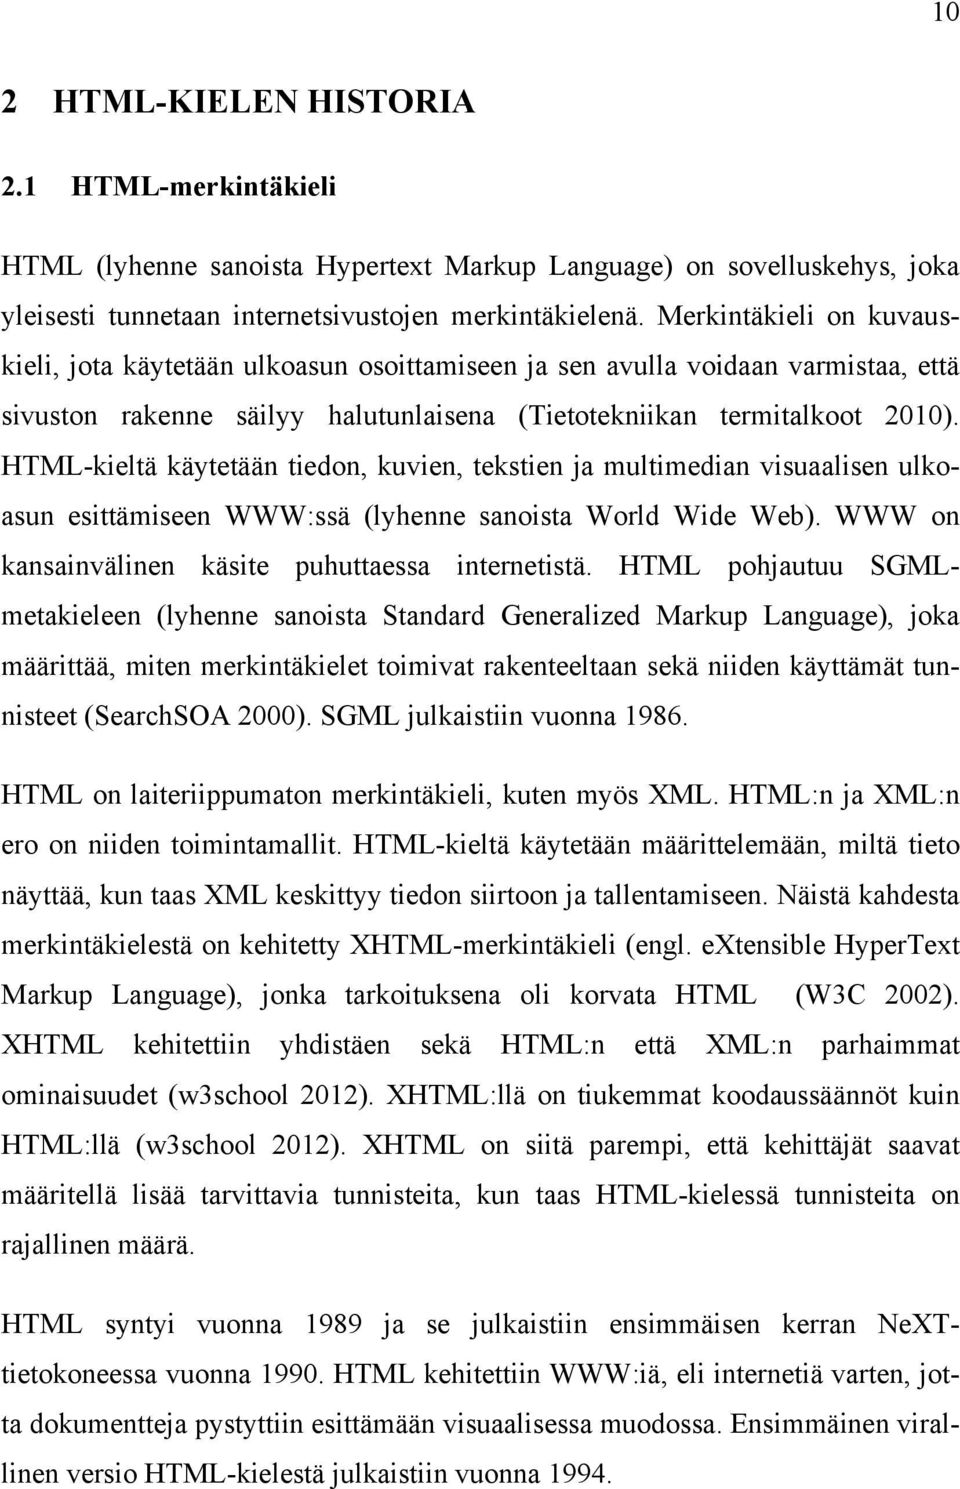 HTML-kieltä käytetään tiedon, kuvien, tekstien ja multimedian visuaalisen ulkoasun esittämiseen WWW:ssä (lyhenne sanoista World Wide Web). WWW on kansainvälinen käsite puhuttaessa internetistä.